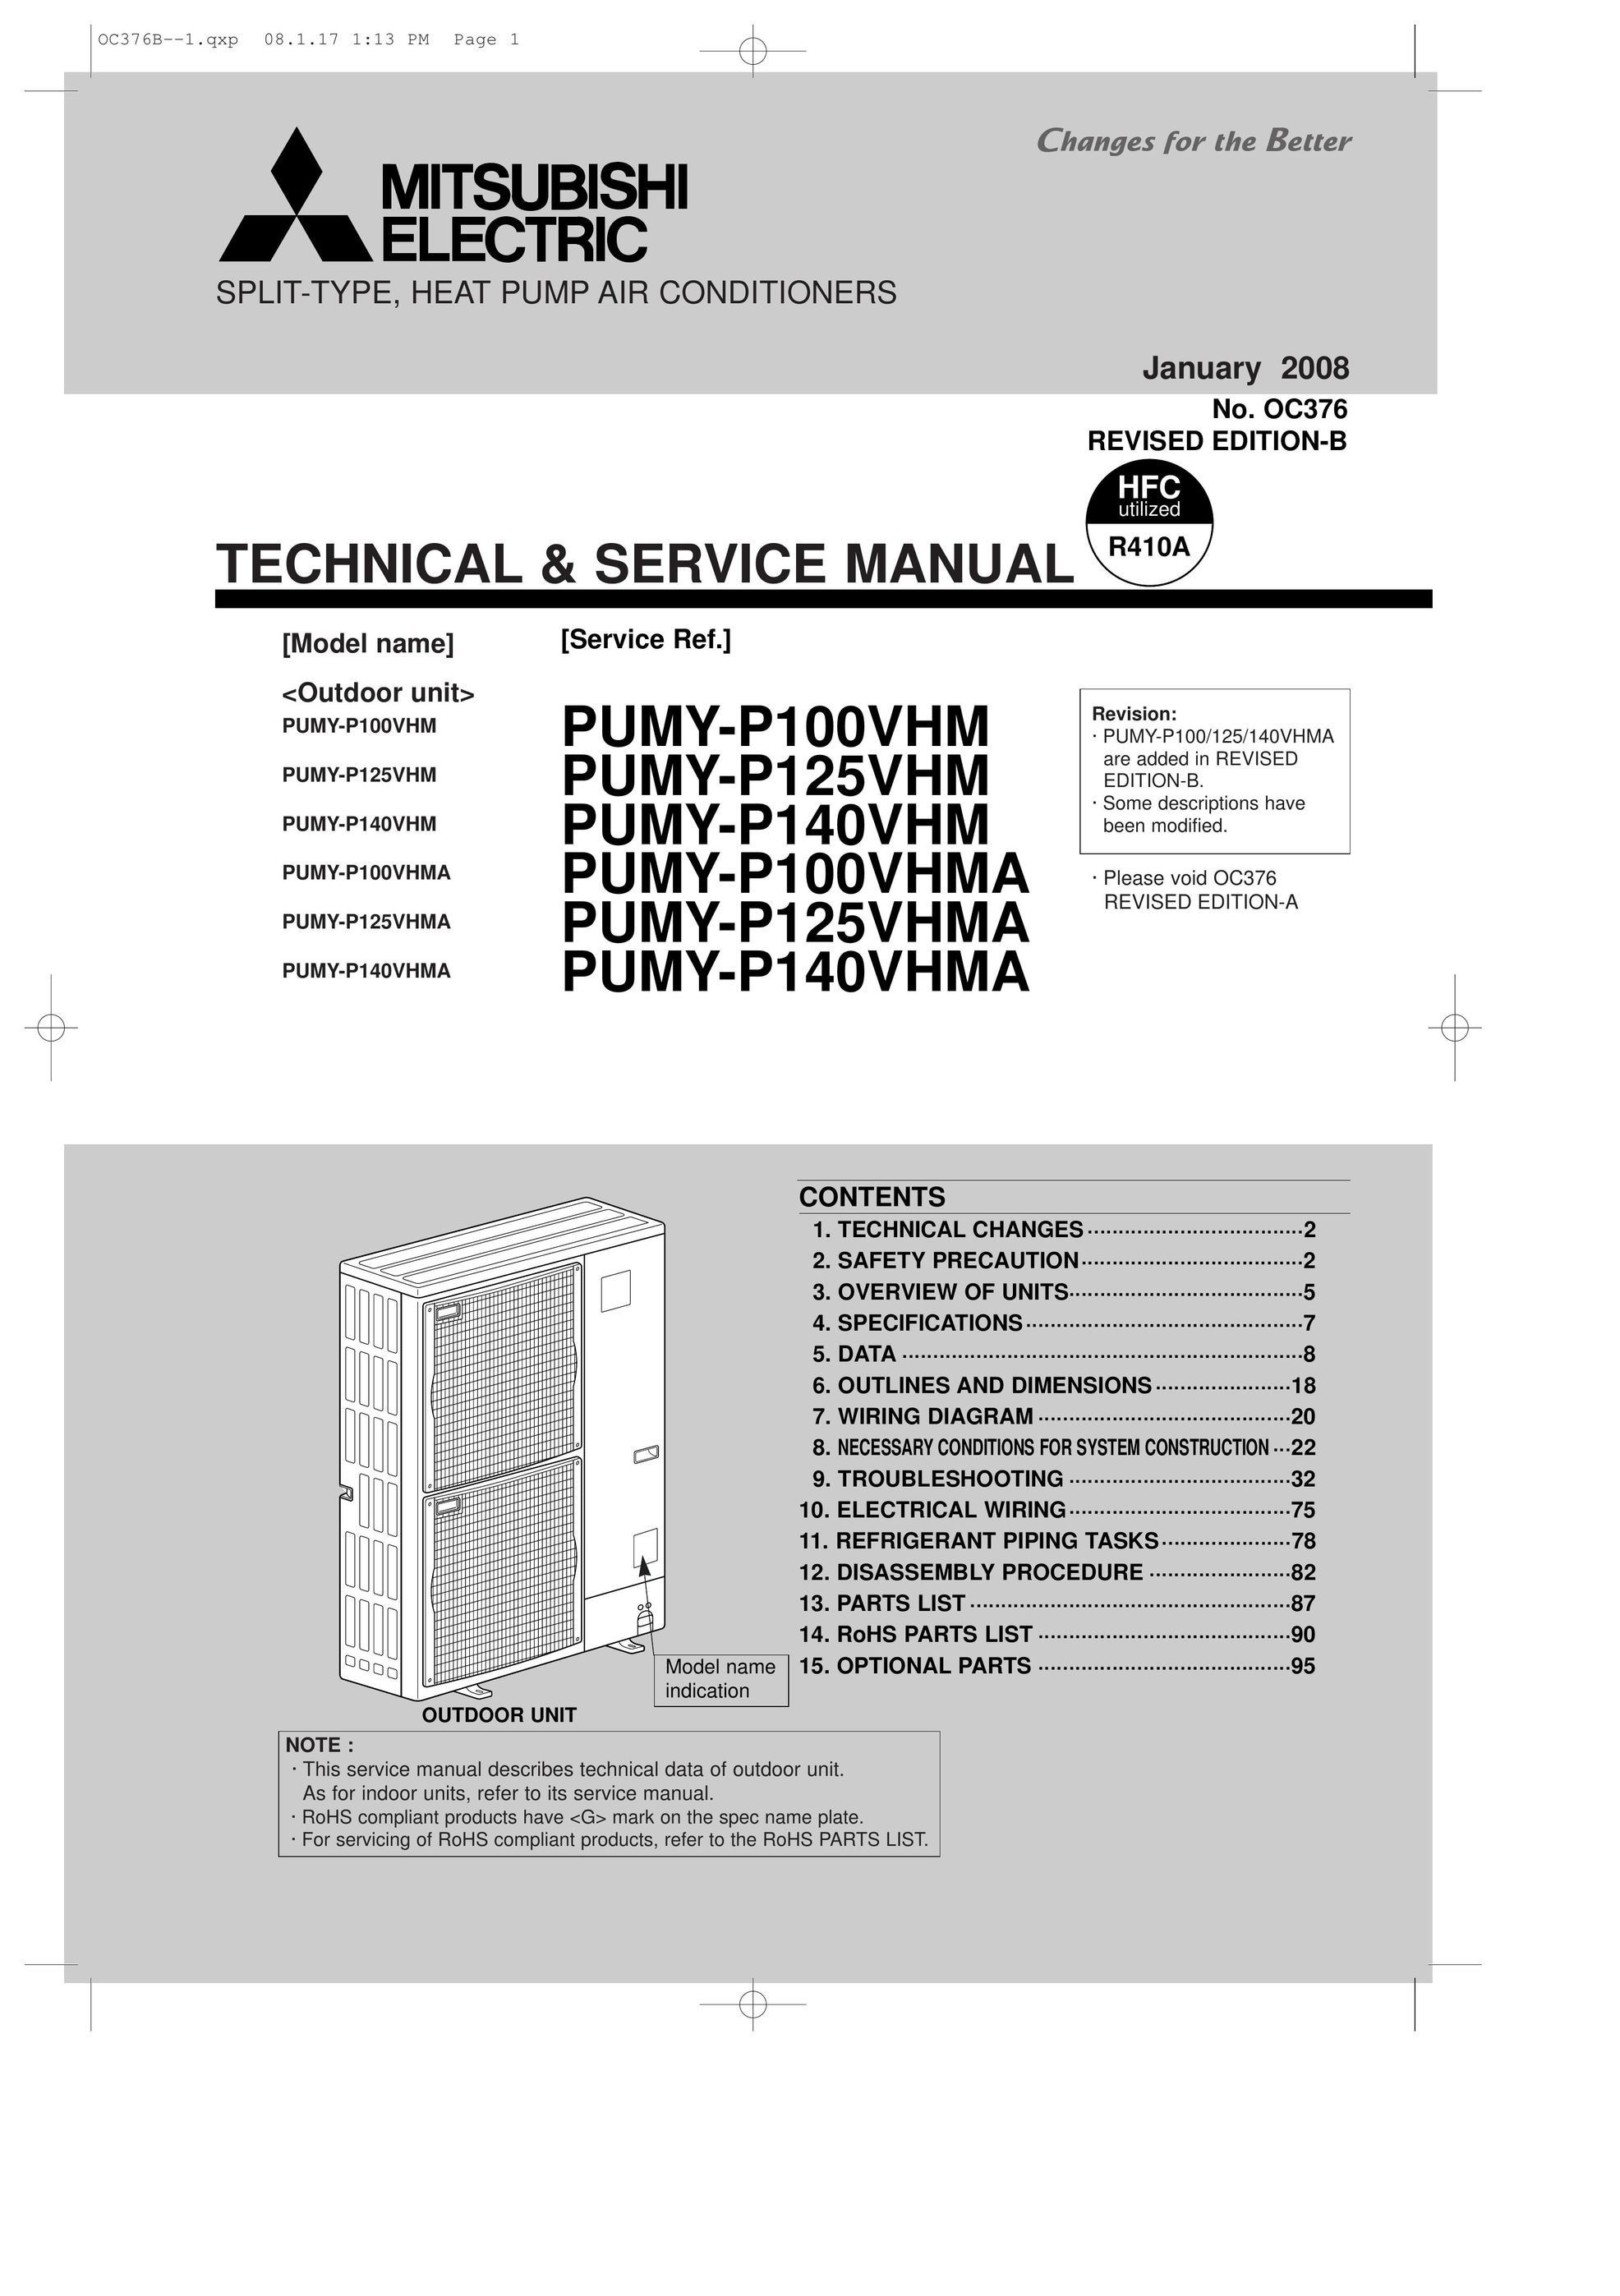 Mitsubishi Electronics OC376 Noise Reduction Machine User Manual